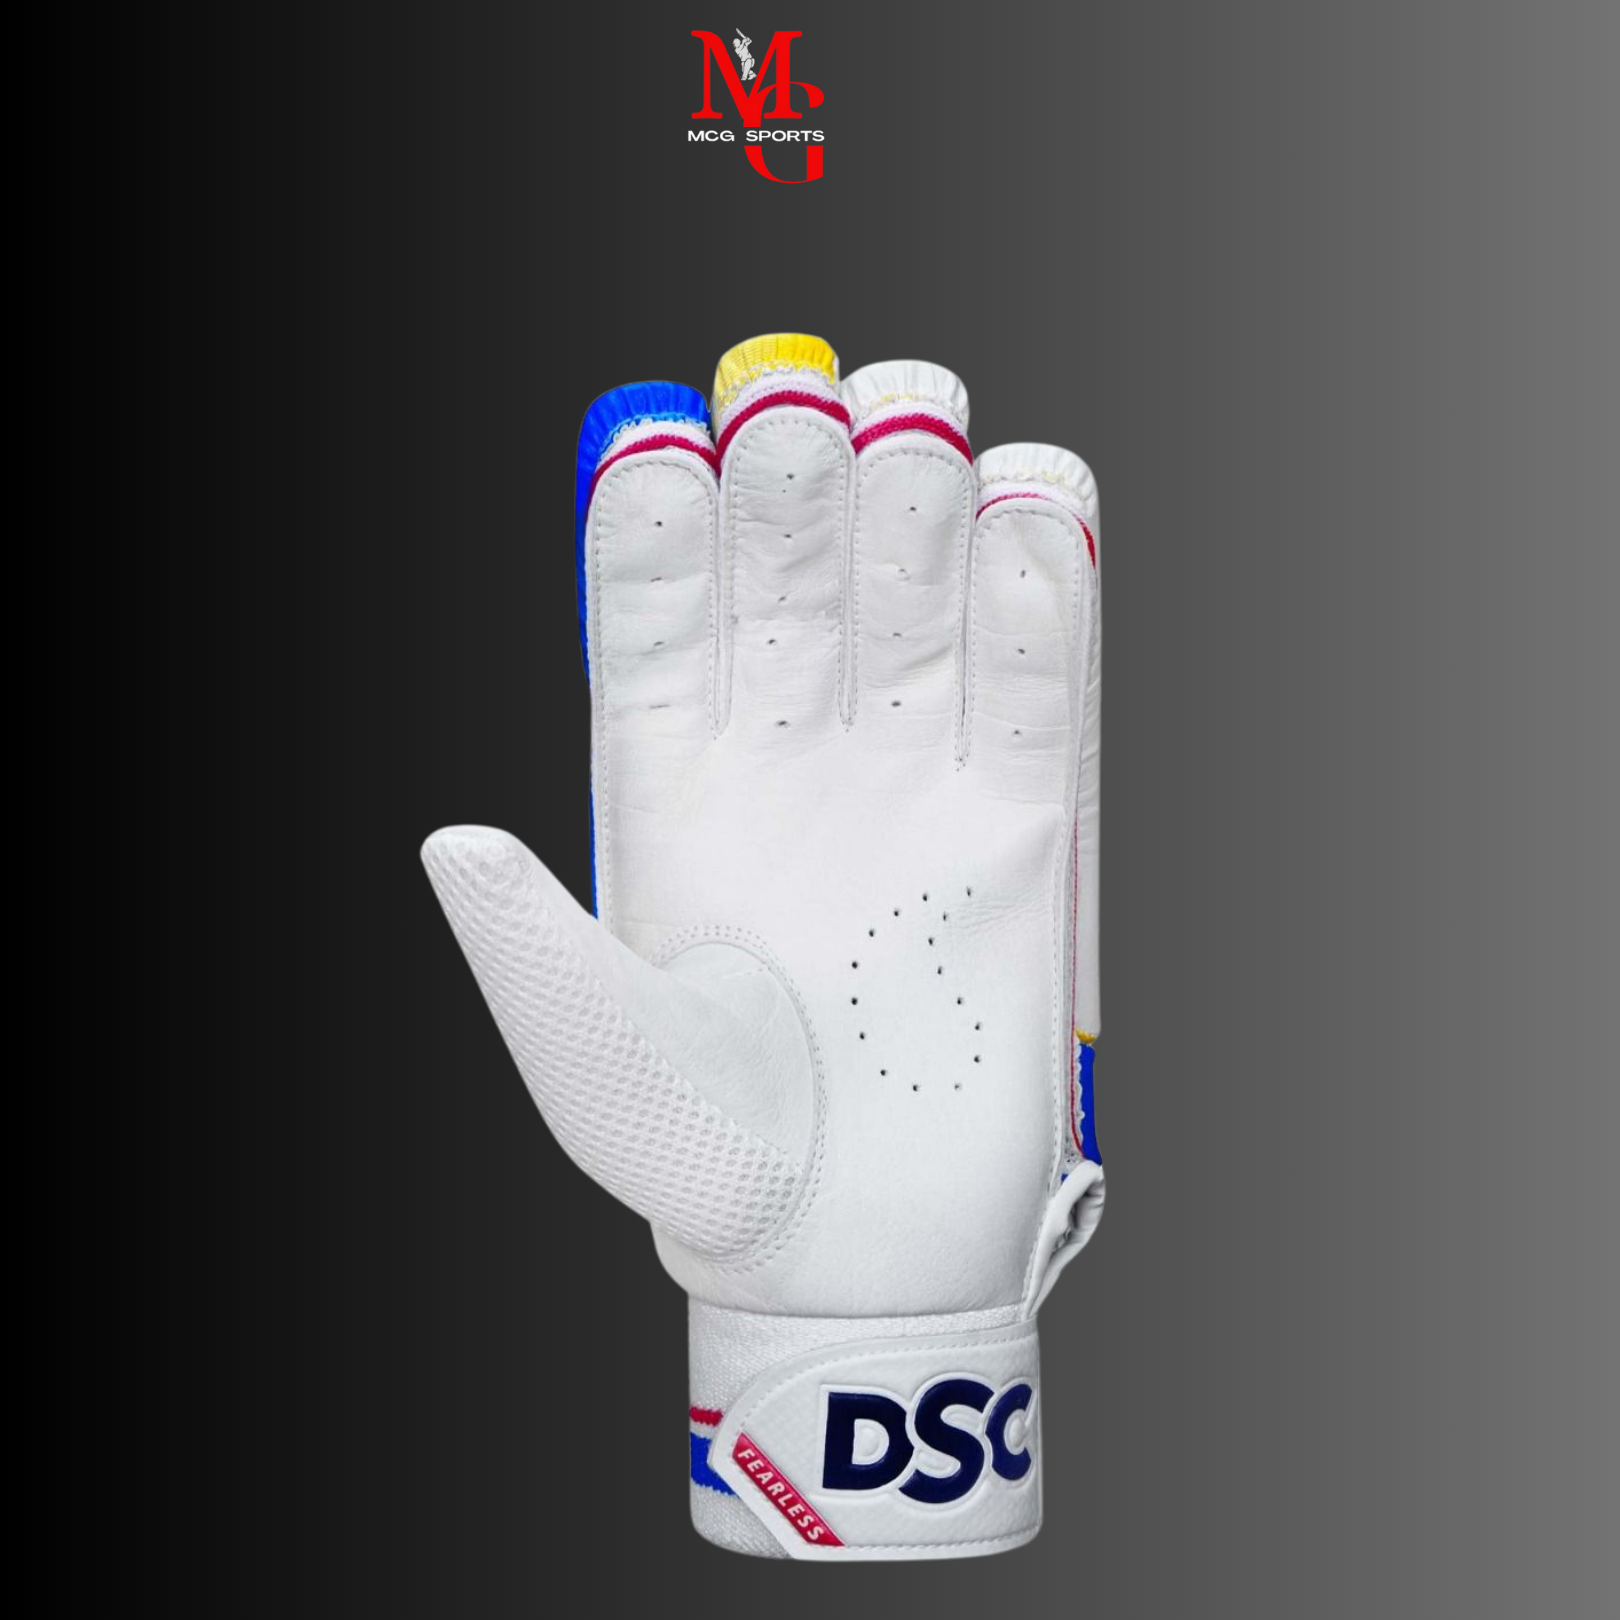 DSC - Intense Rage Batting Gloves